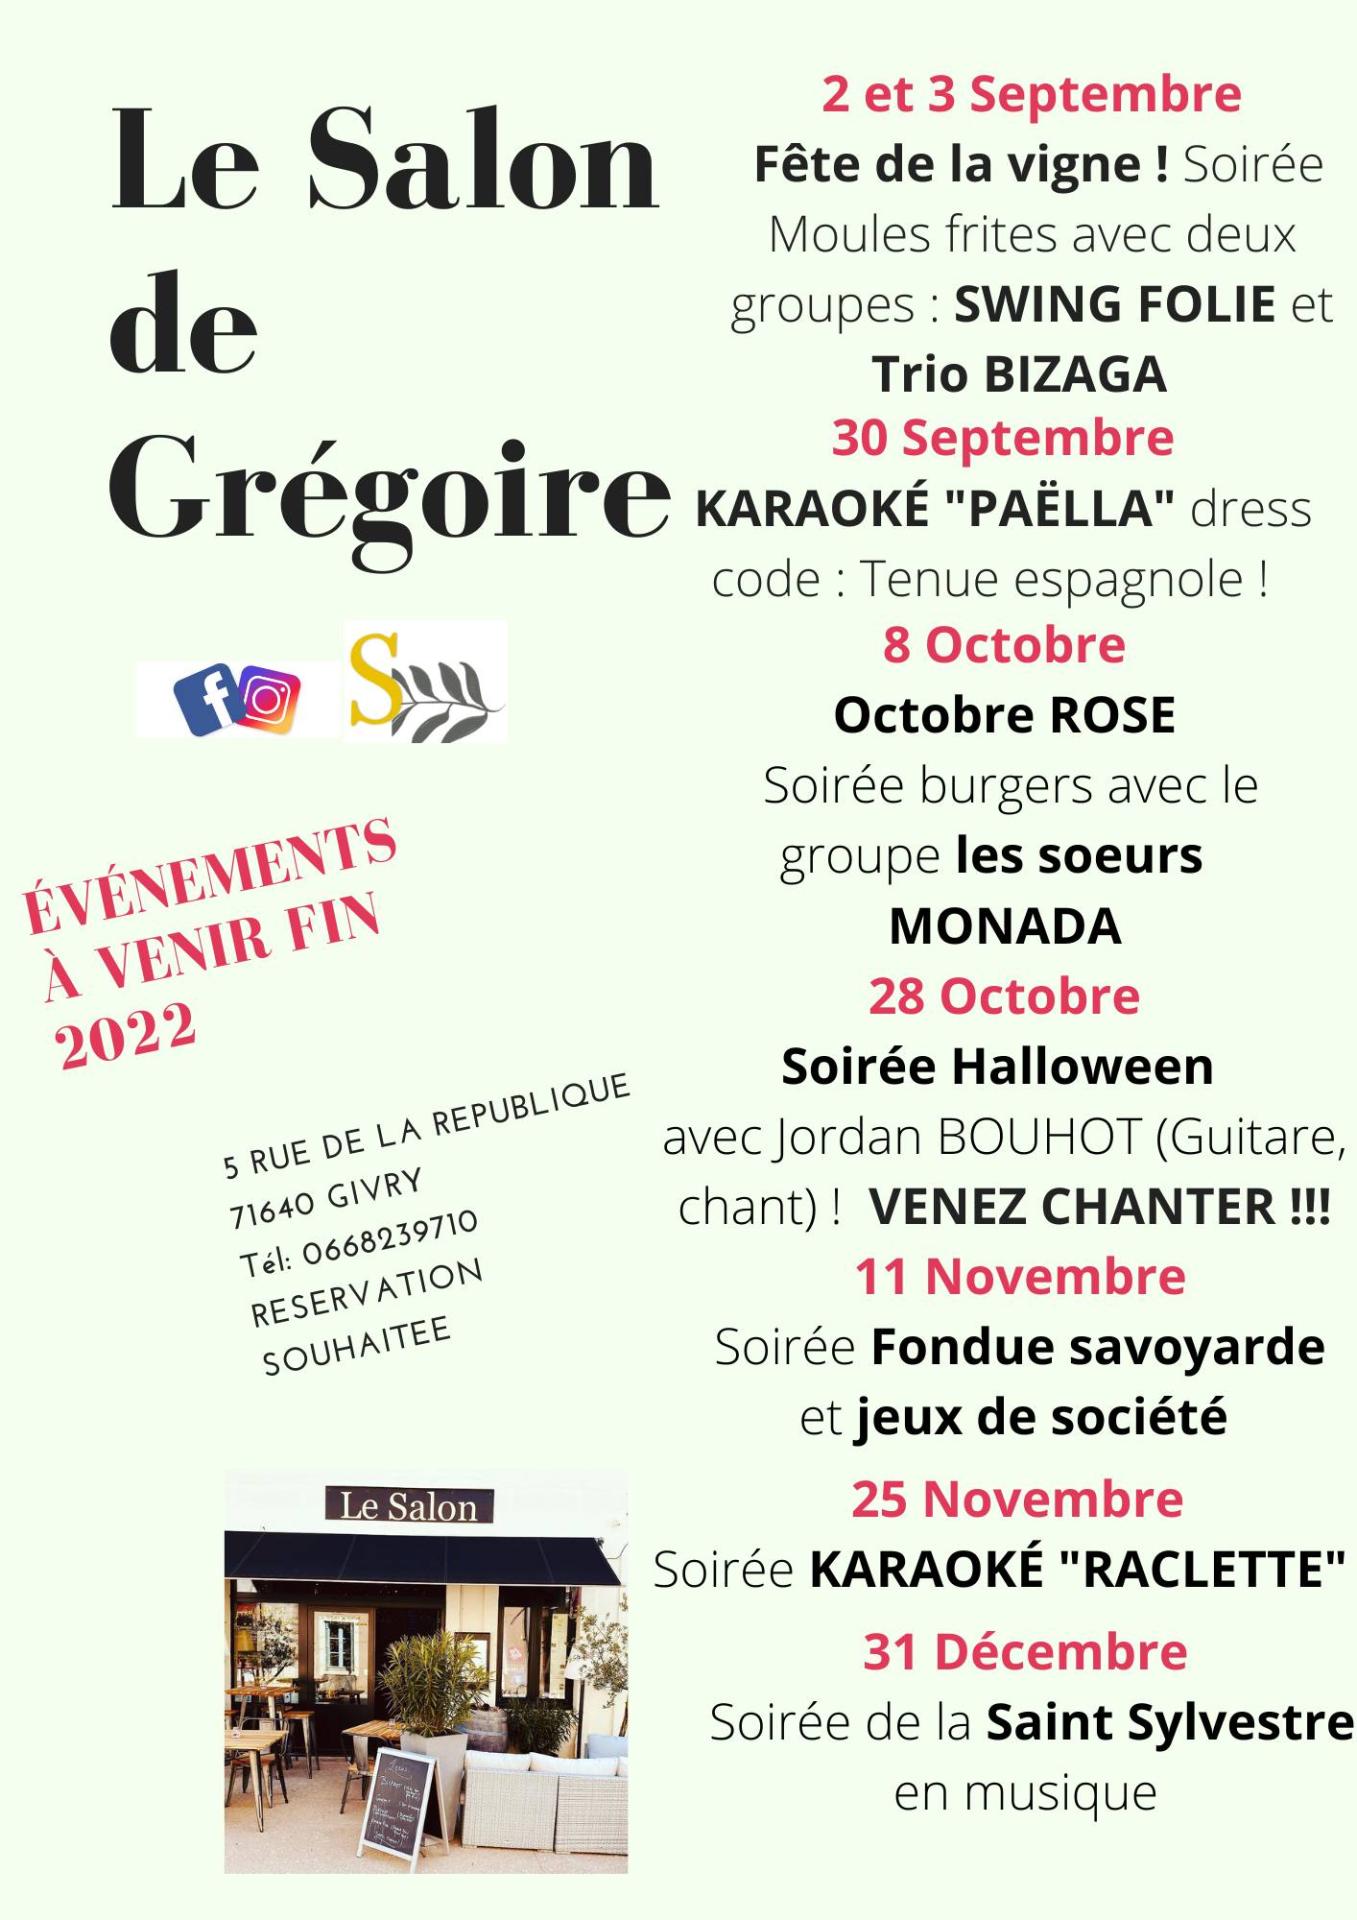 Octobre Rose - Soirée burgers avec les soeurs MONADA au Restaurant " Le Salon de Grégoire"